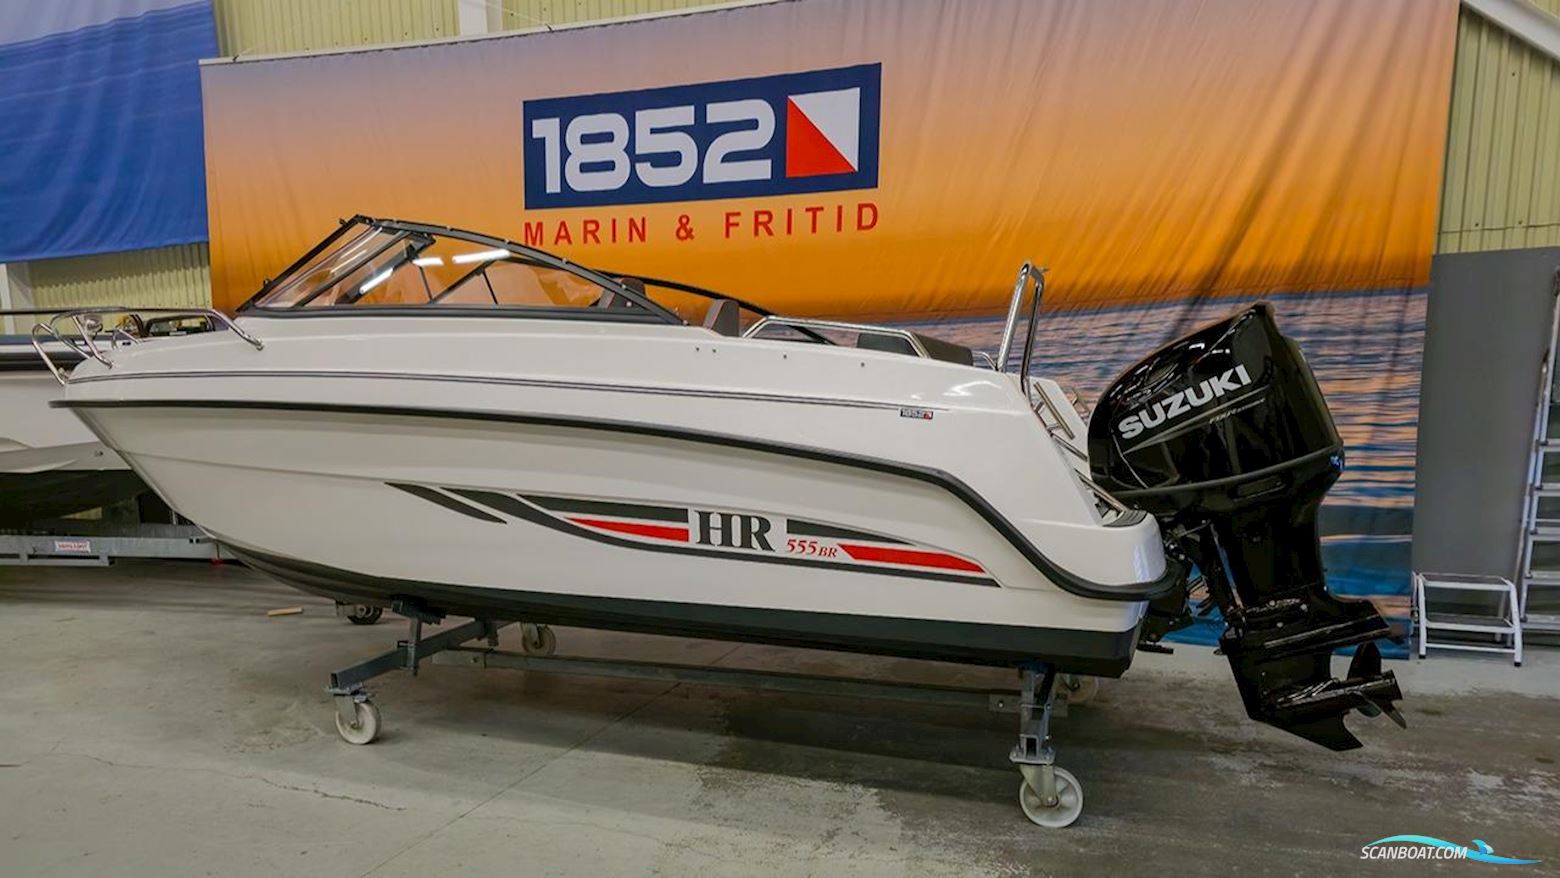 Hr 555 BR Motorboot 2023, mit Suzuki motor, Sweden